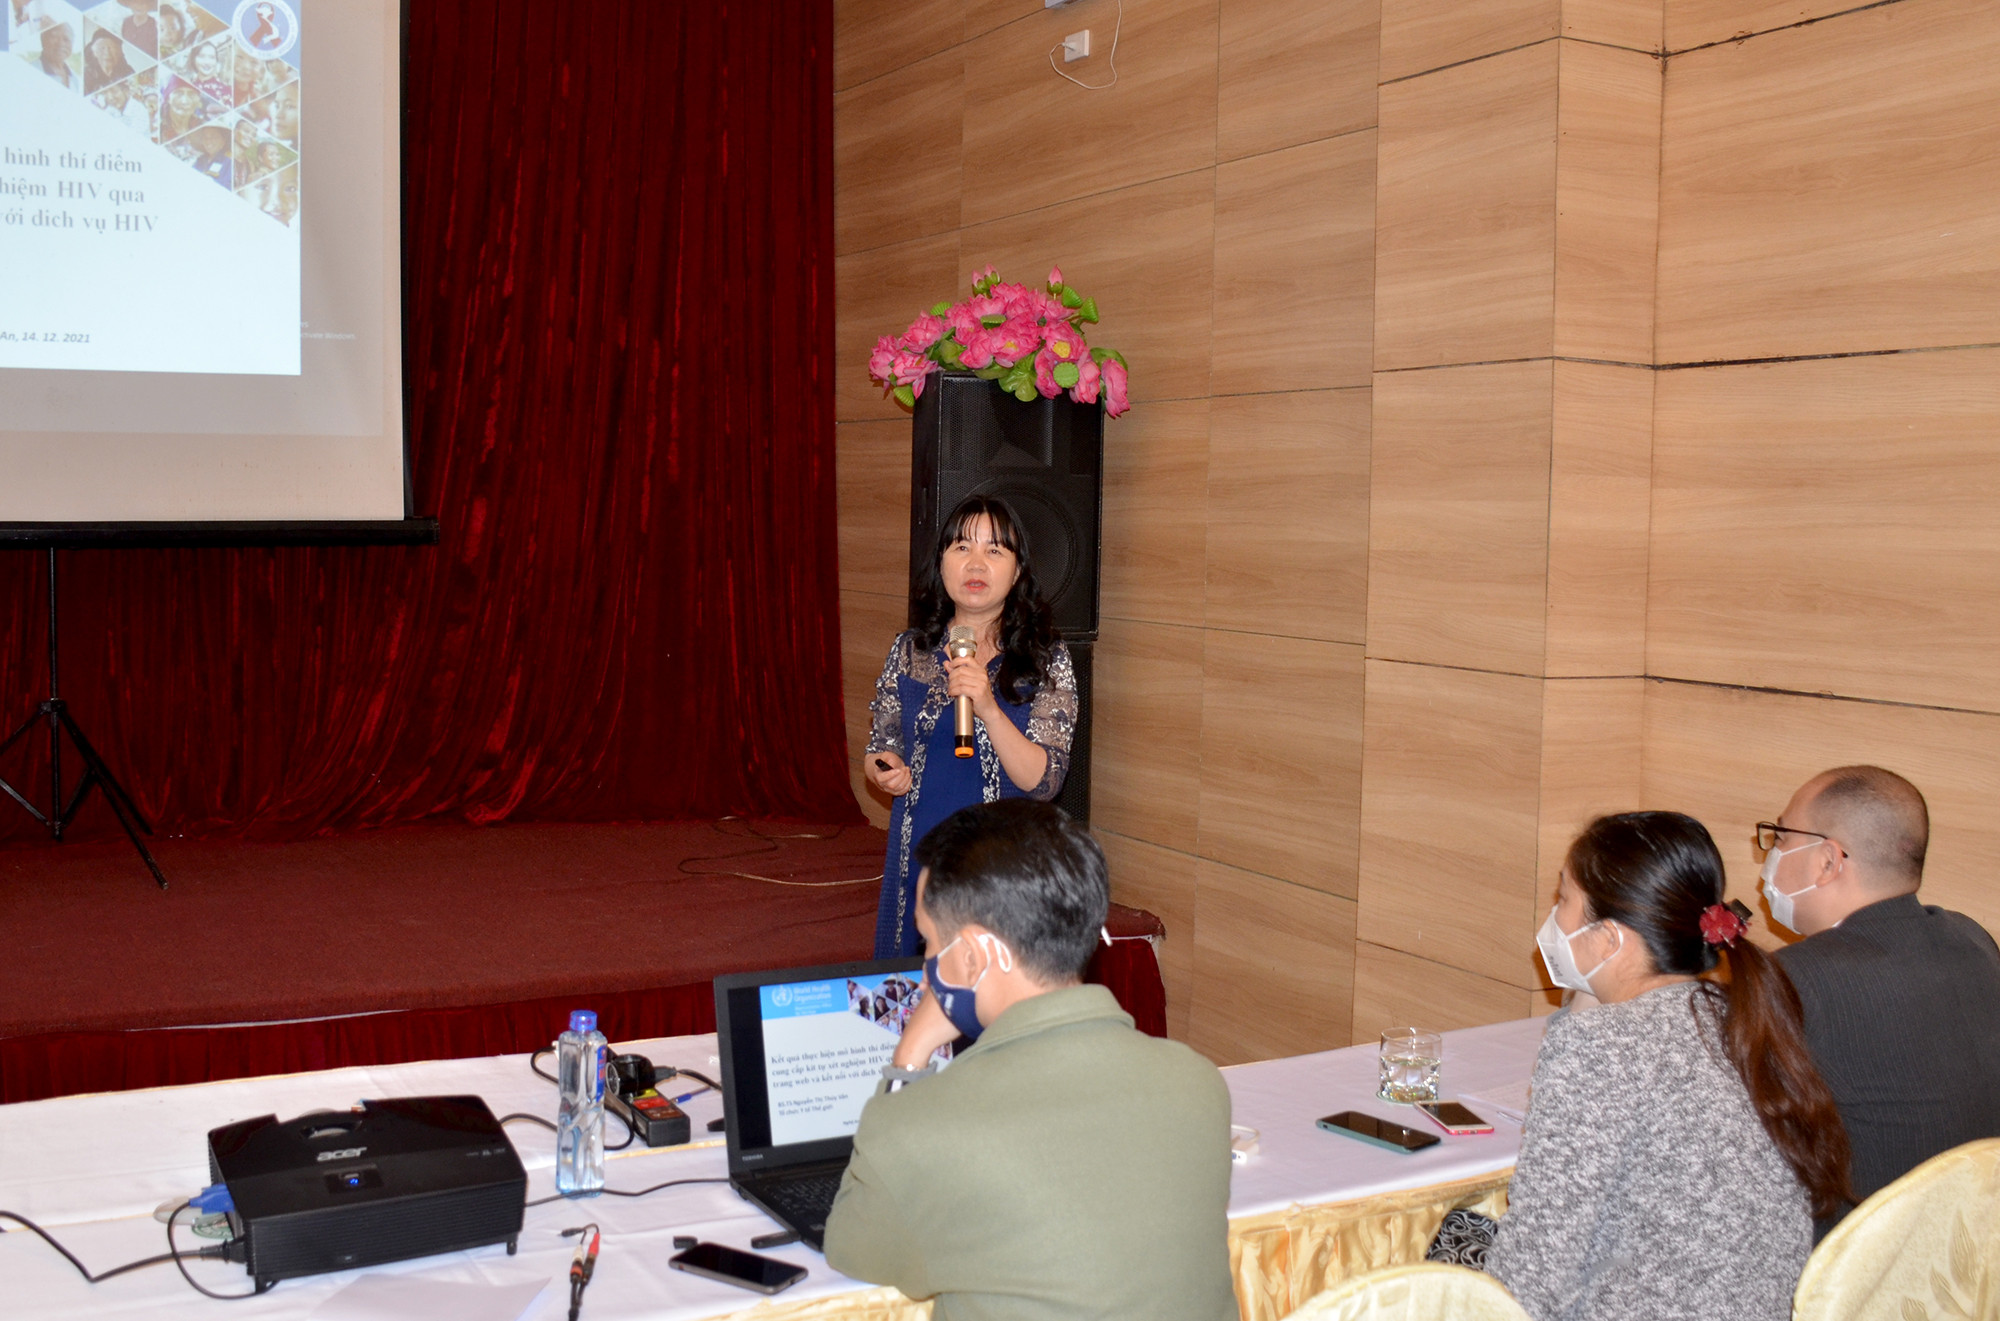 Đại diện văn phòng WHO tại Việt Nam đã đánh giá cao hoạt động triển khai mô hình cung cấp test tự xét nghiệm HIV thông qua trang Web do Nghệ An thực hiện. Ảnh: Thành Chung